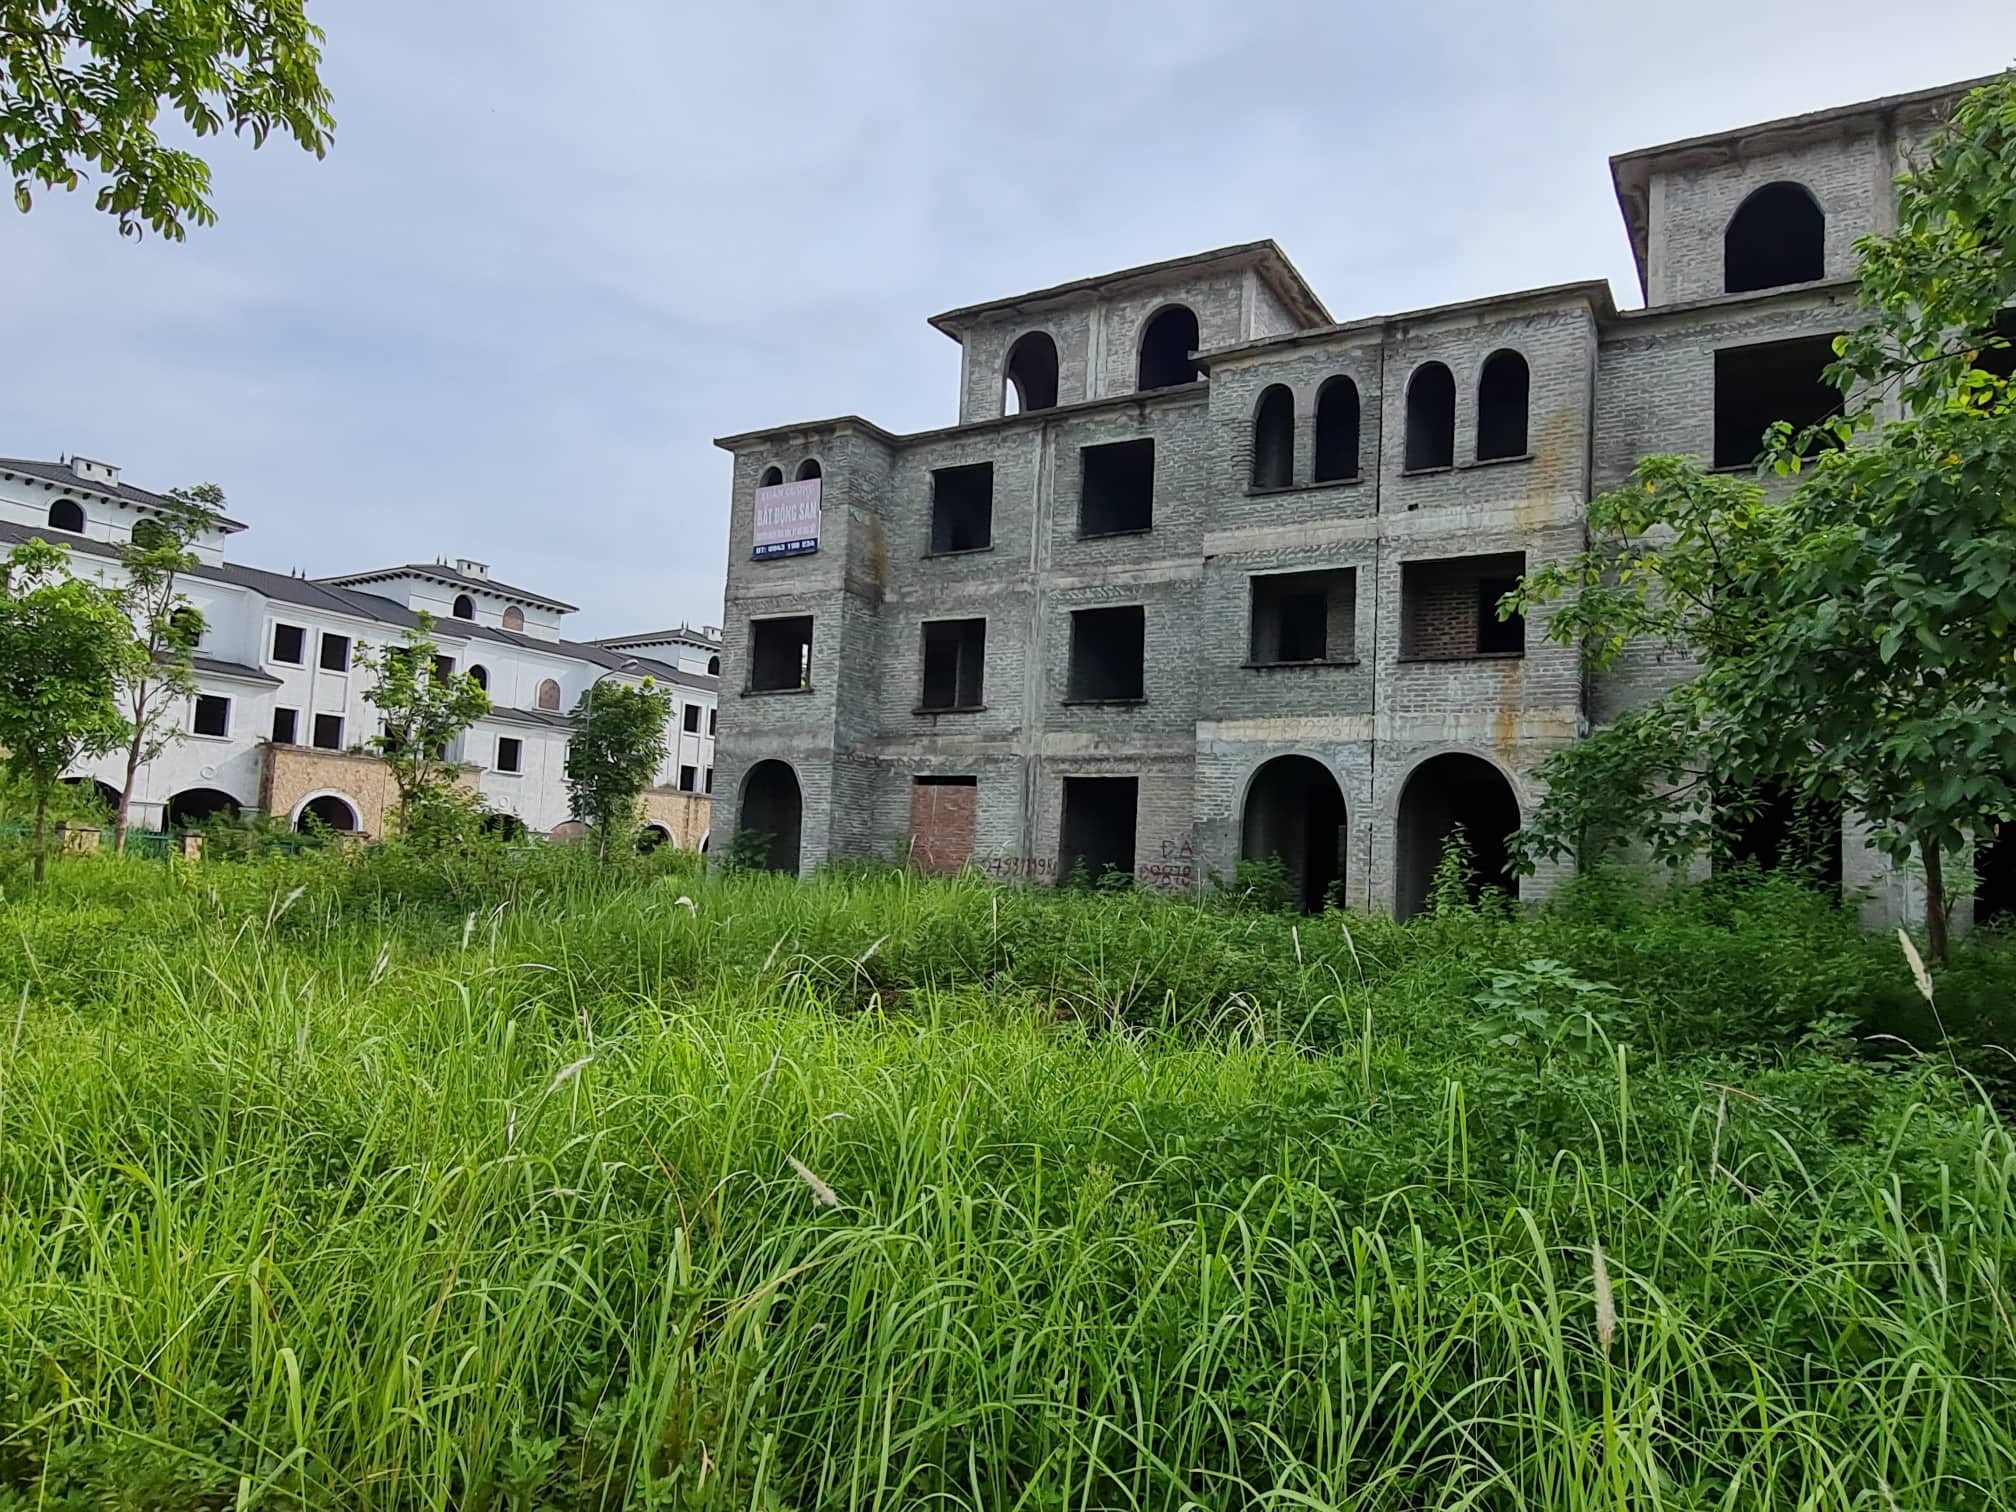 
Sau hàng chục năm triển khai, nhiều dãy biệt thự, nhà biệt thự liền kề tại dự án Khu đô thị Nam An Khánh lại bị bỏ mặc, xuống cấp theo thời gian.
